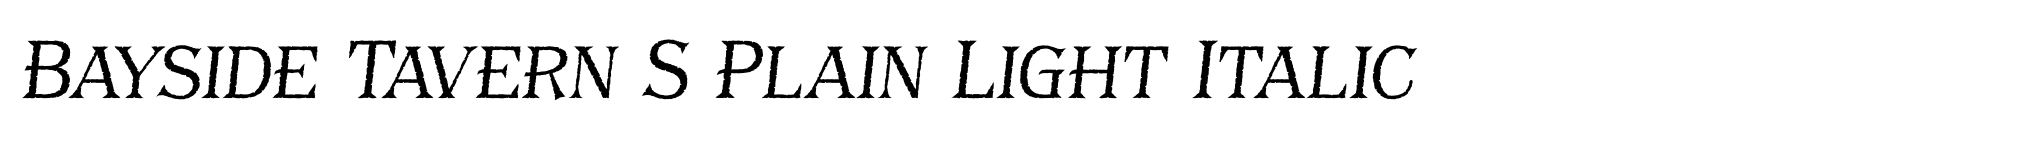 Bayside Tavern S Plain Light Italic image